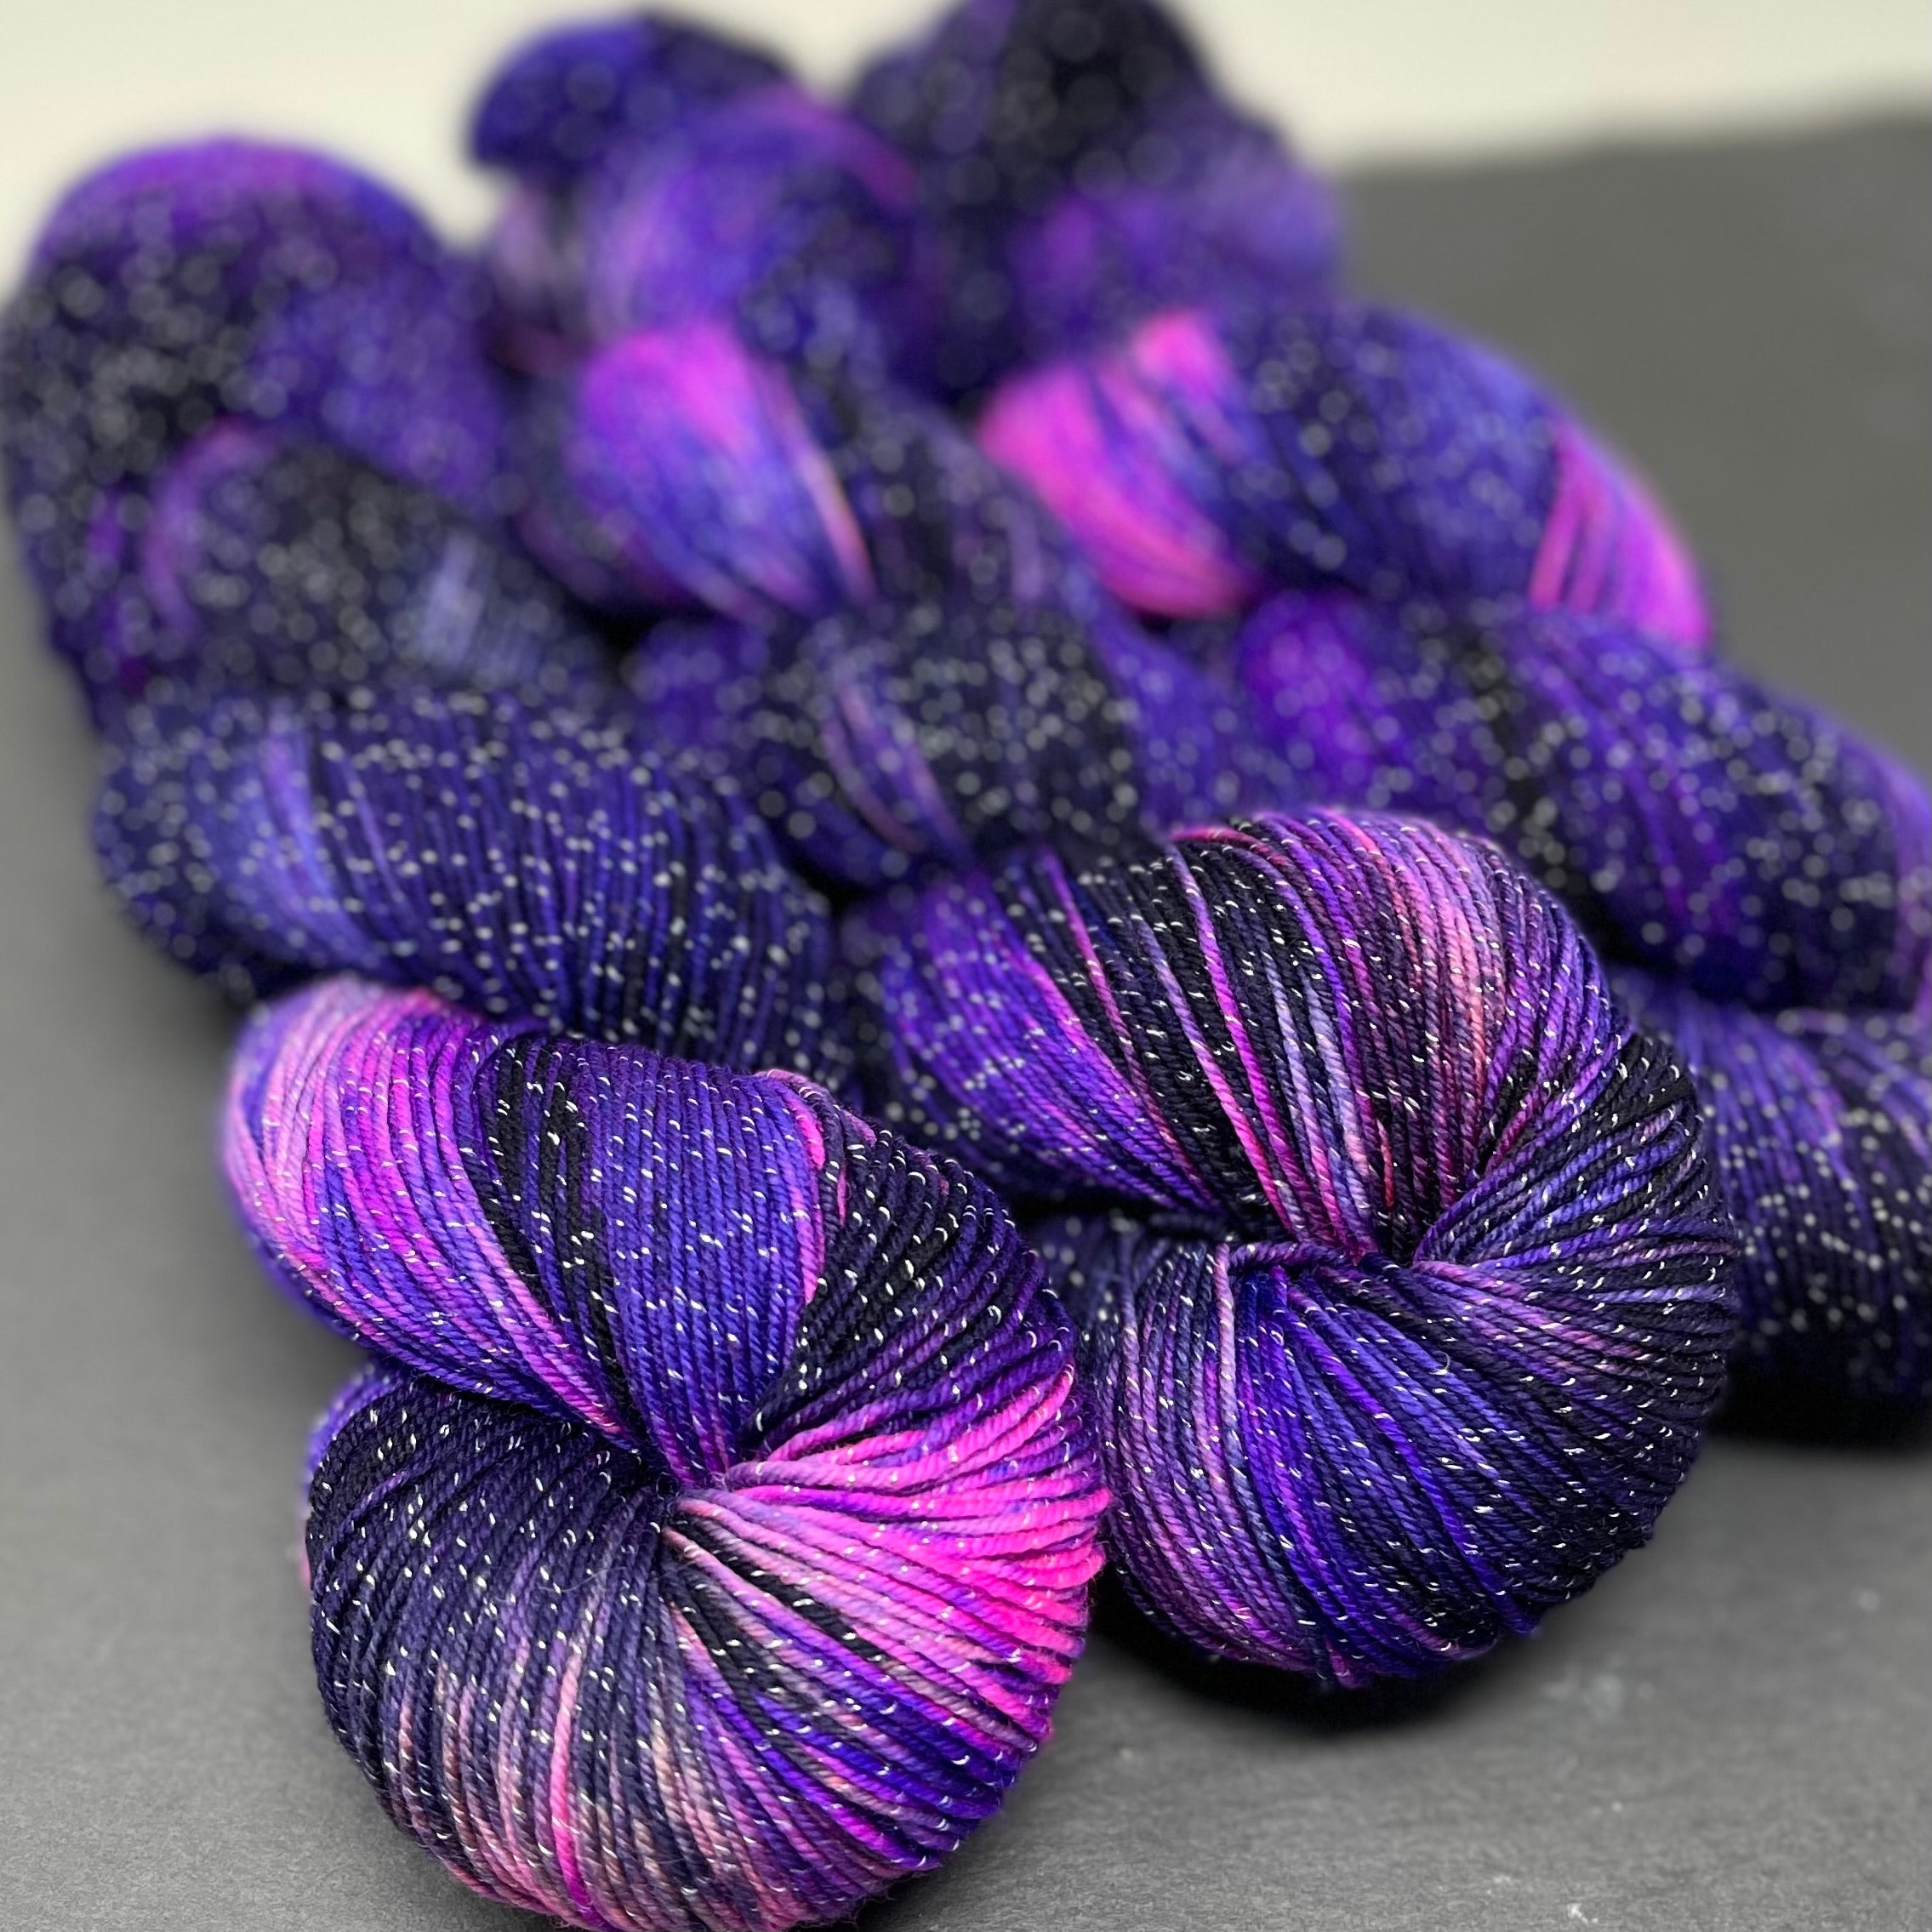 Good Juju Sock yarn Velvet Underground – Deep Dyed Yarns